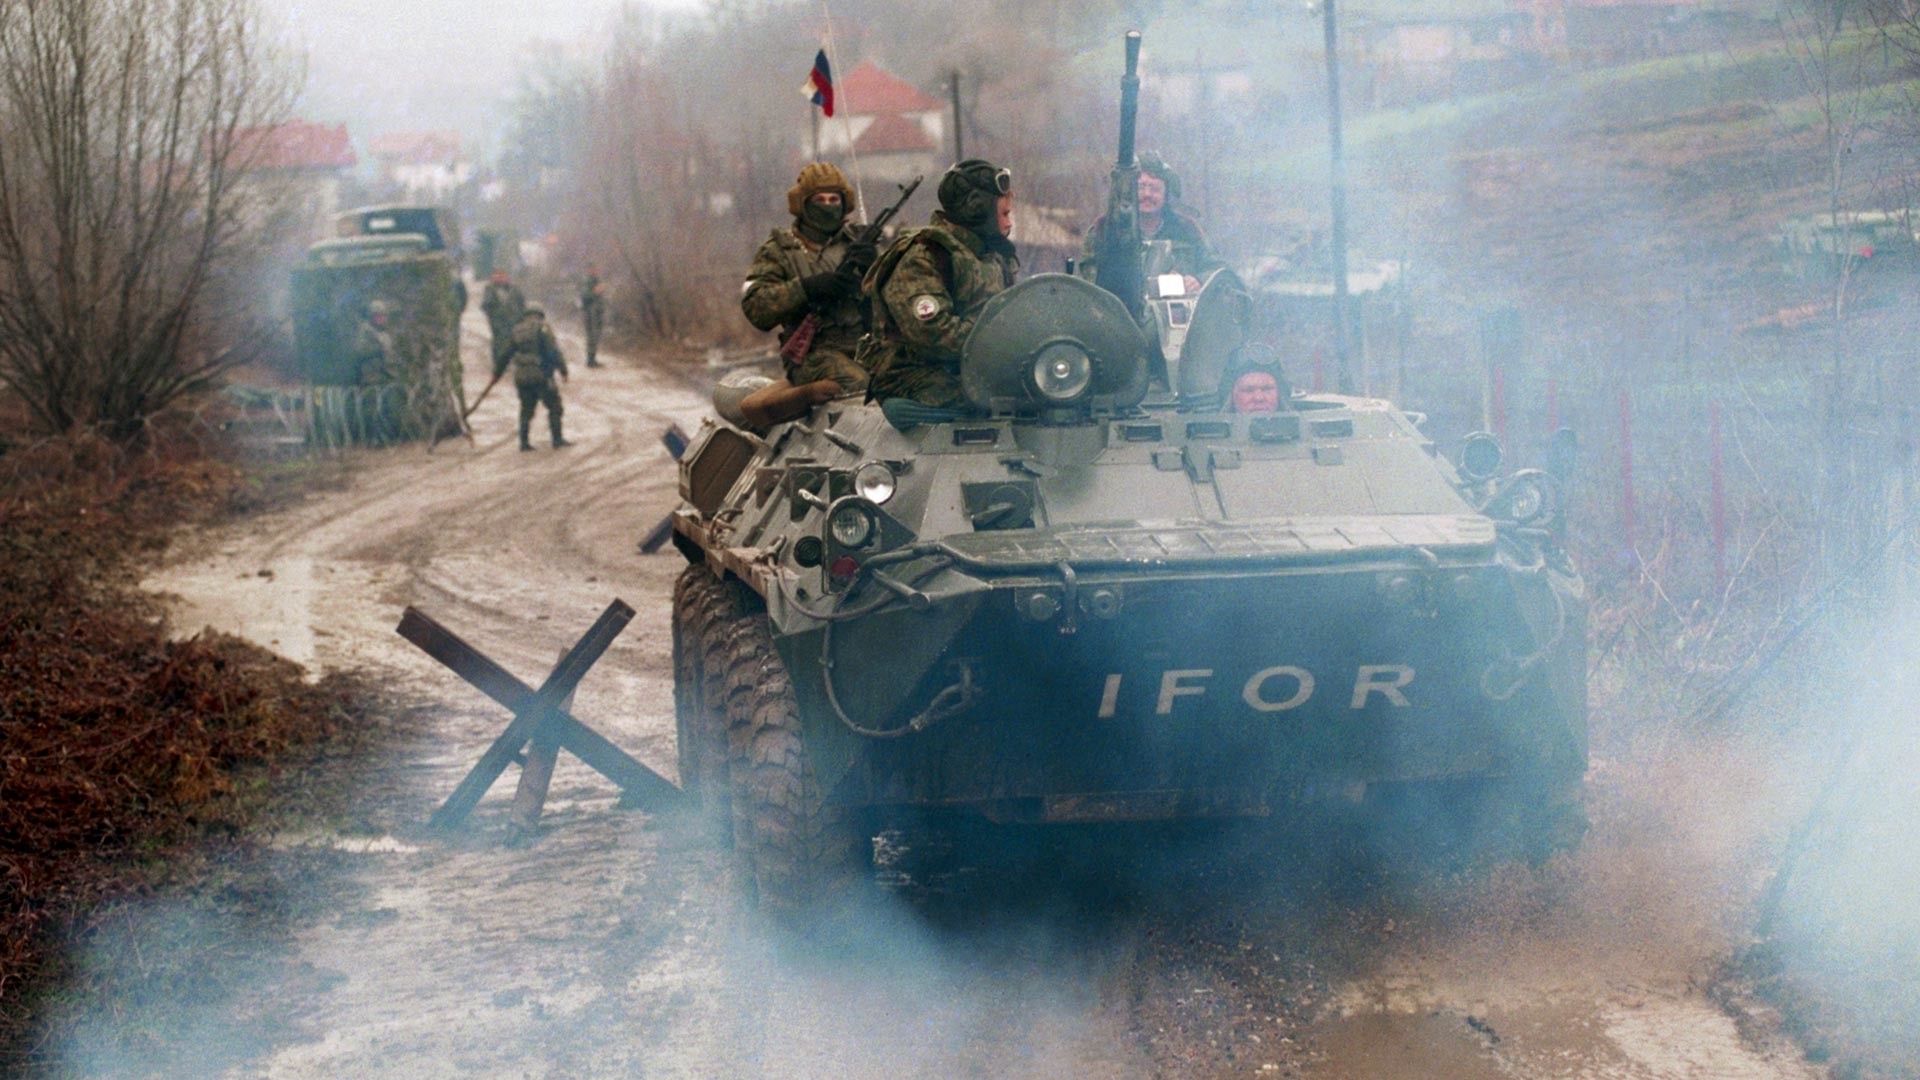  Босна и Херцеговина. 22 април 1996 г. Патрул на псковски десантчици от руската миротворческа бригада